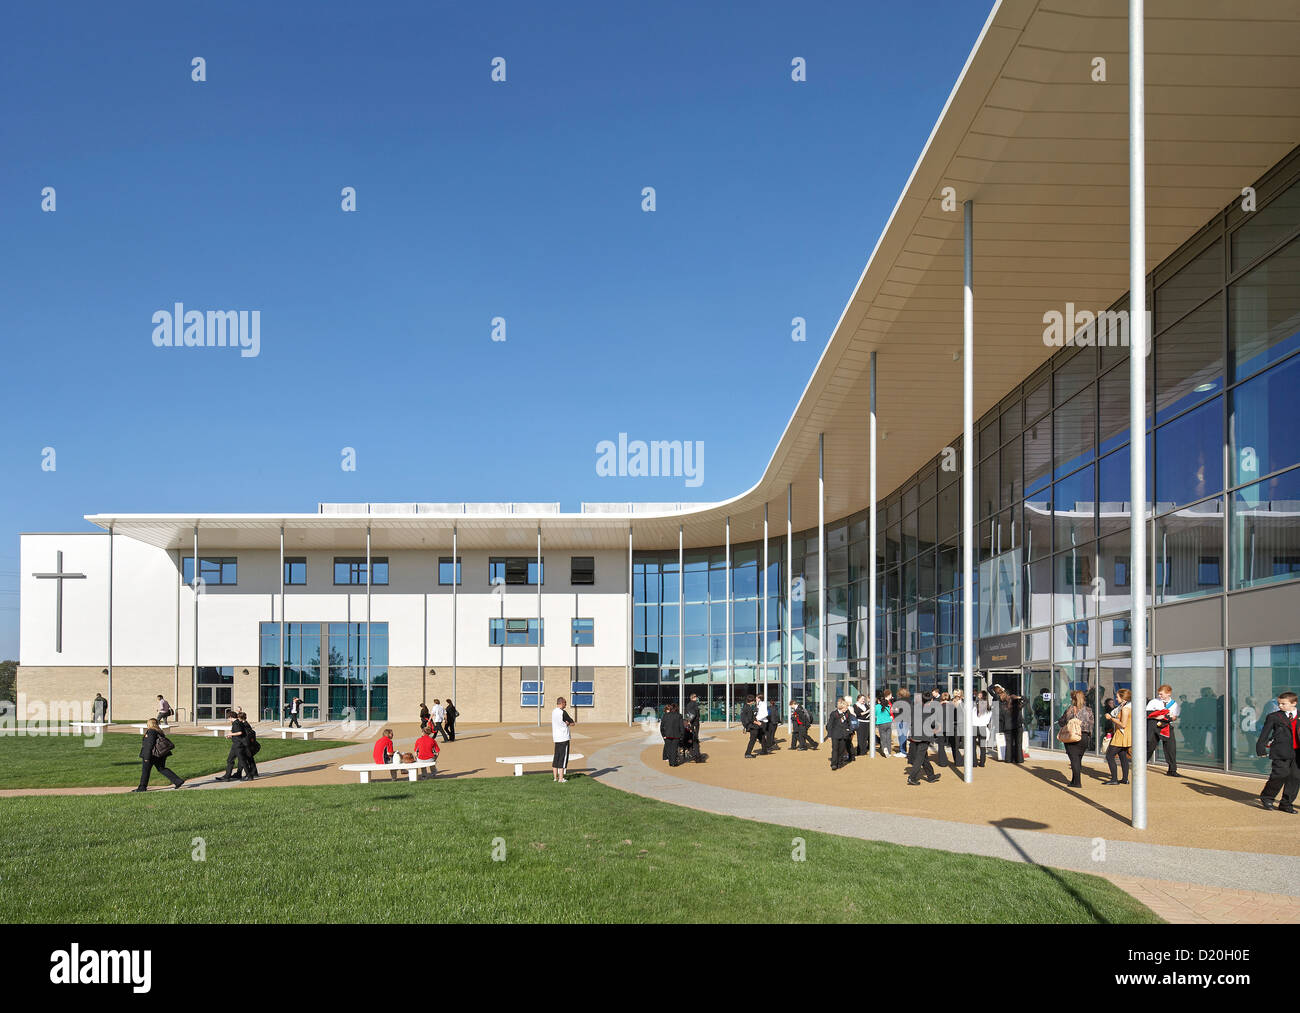 Alle Heiligen Akademie, Chelteham, Vereinigtes Königreich. Architekt: Nicholas Hare Architekten LLP, 2012. Überdachte Haupteingang. Stockfoto